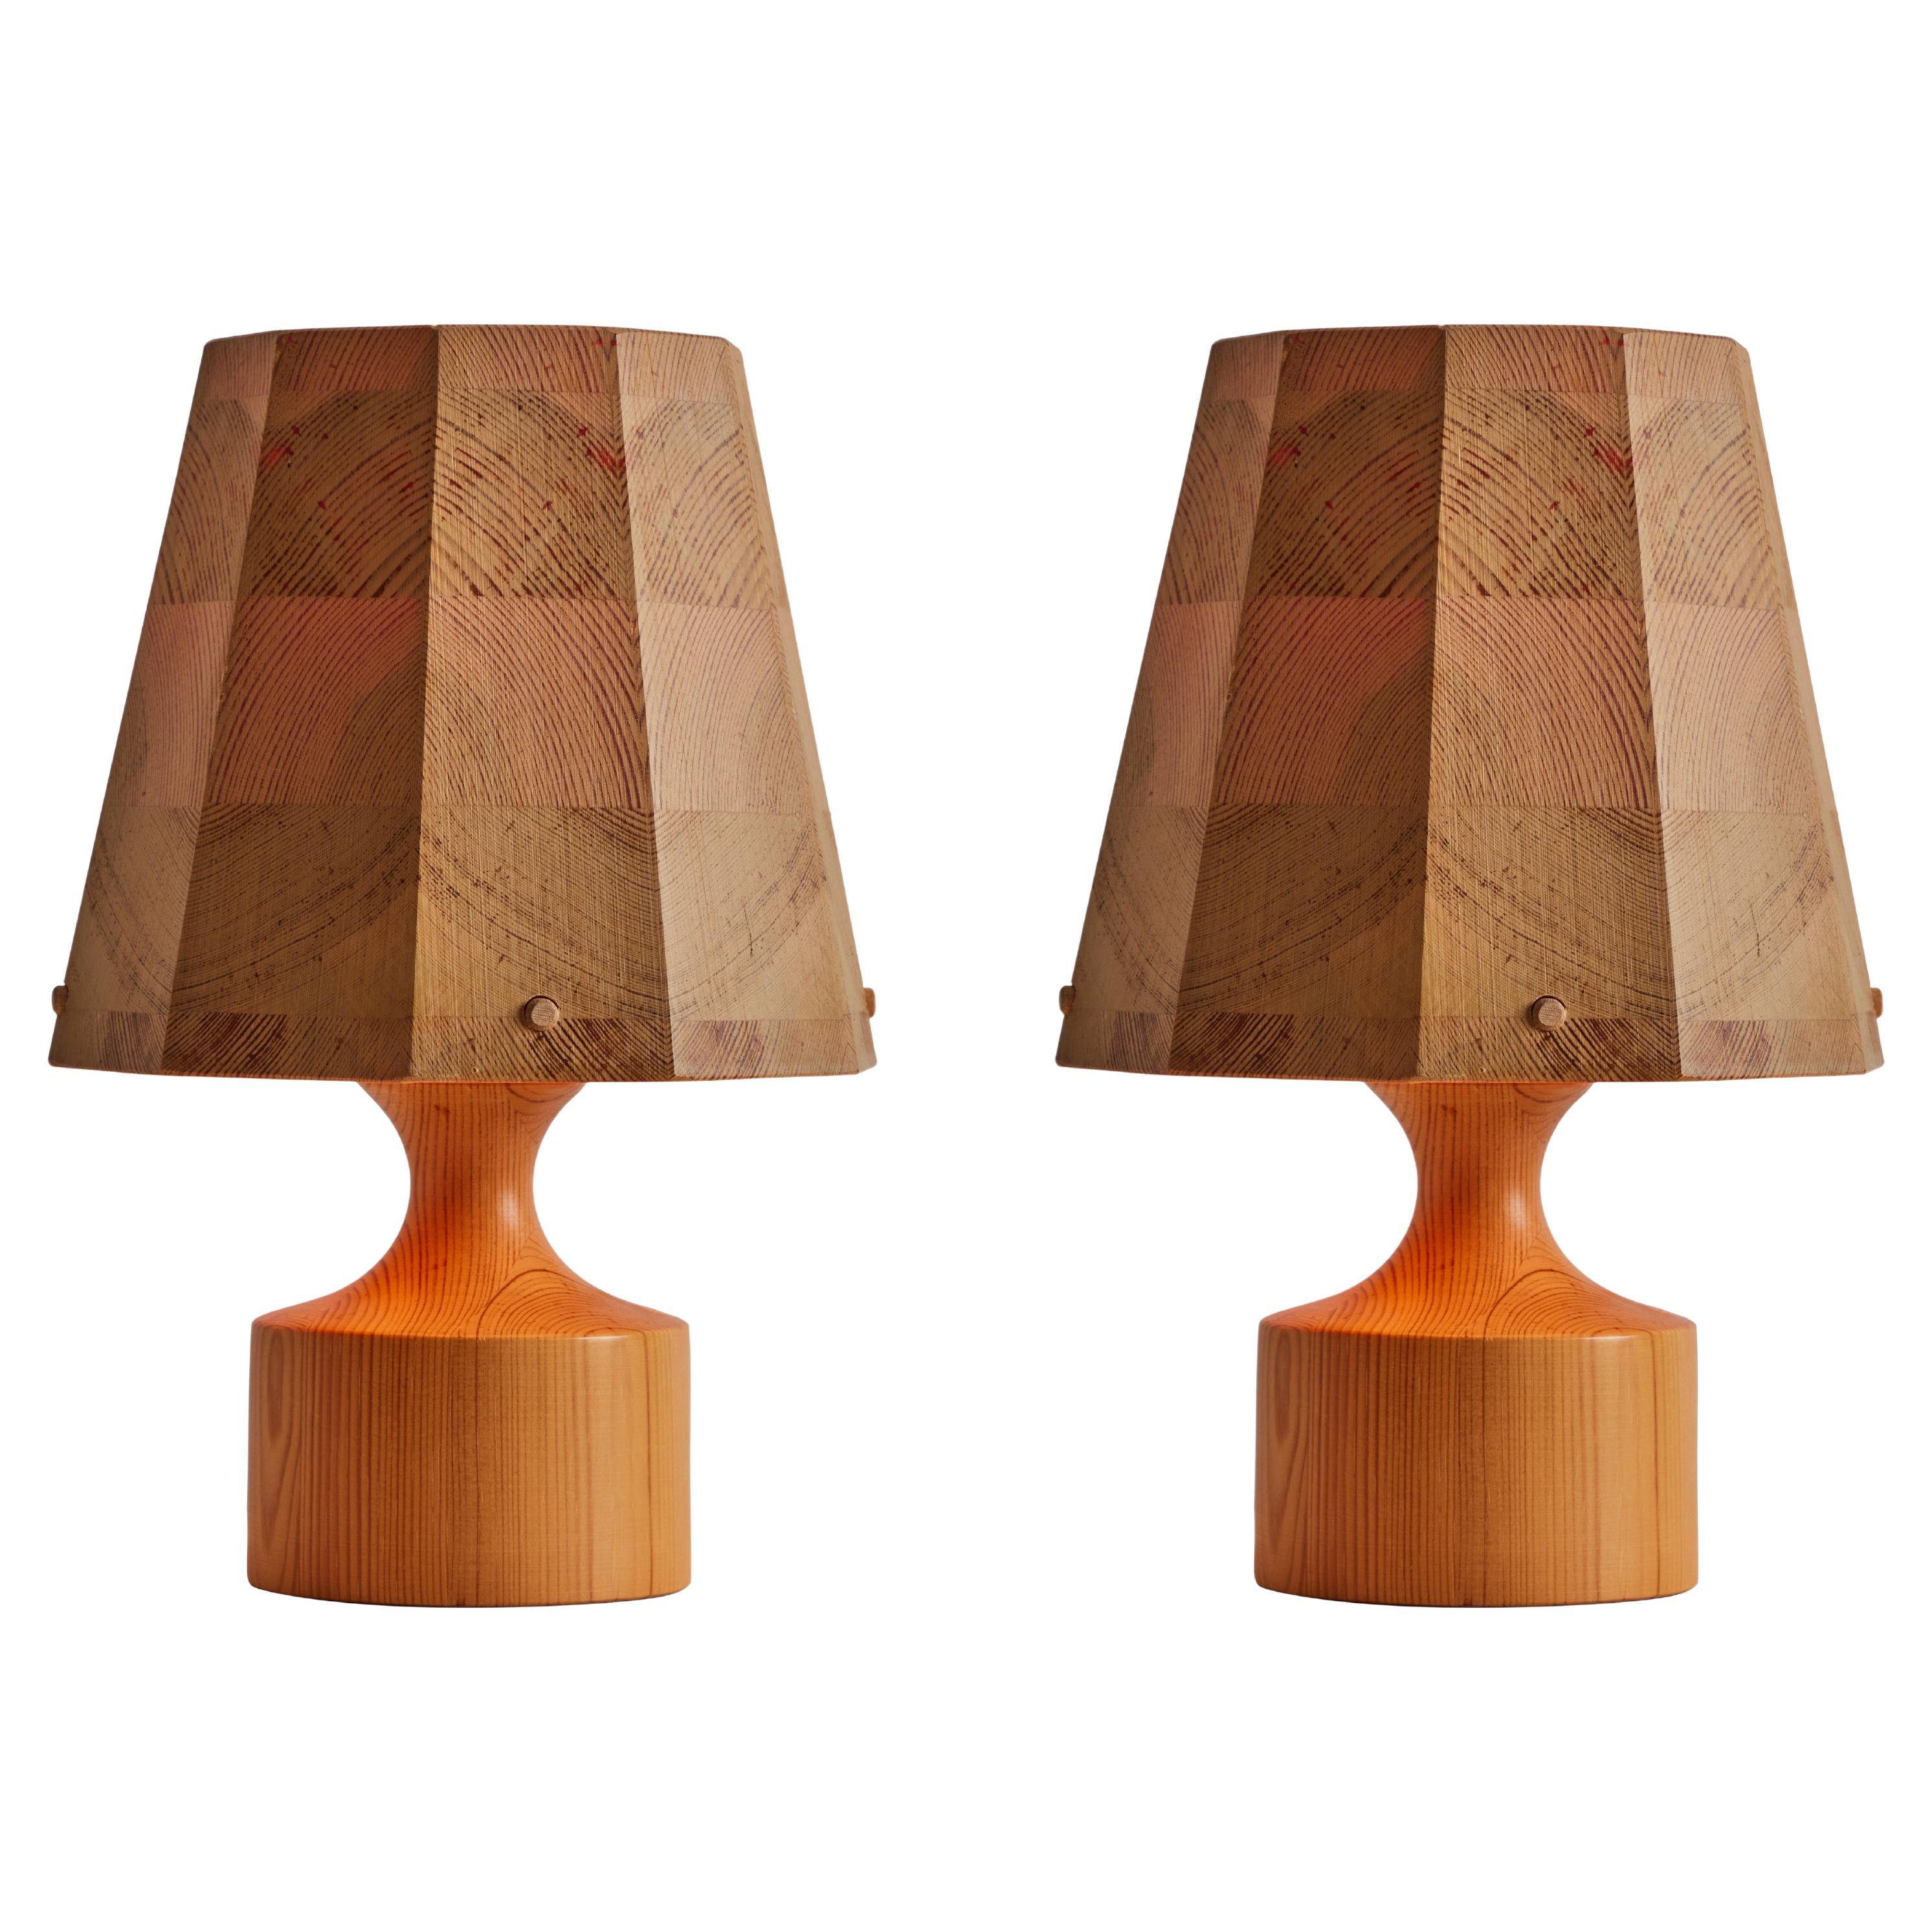 Paire de lampes de bureau en bois des années 1960 attribuée à Hans-Agne Jakobsson pour AB Ellysett